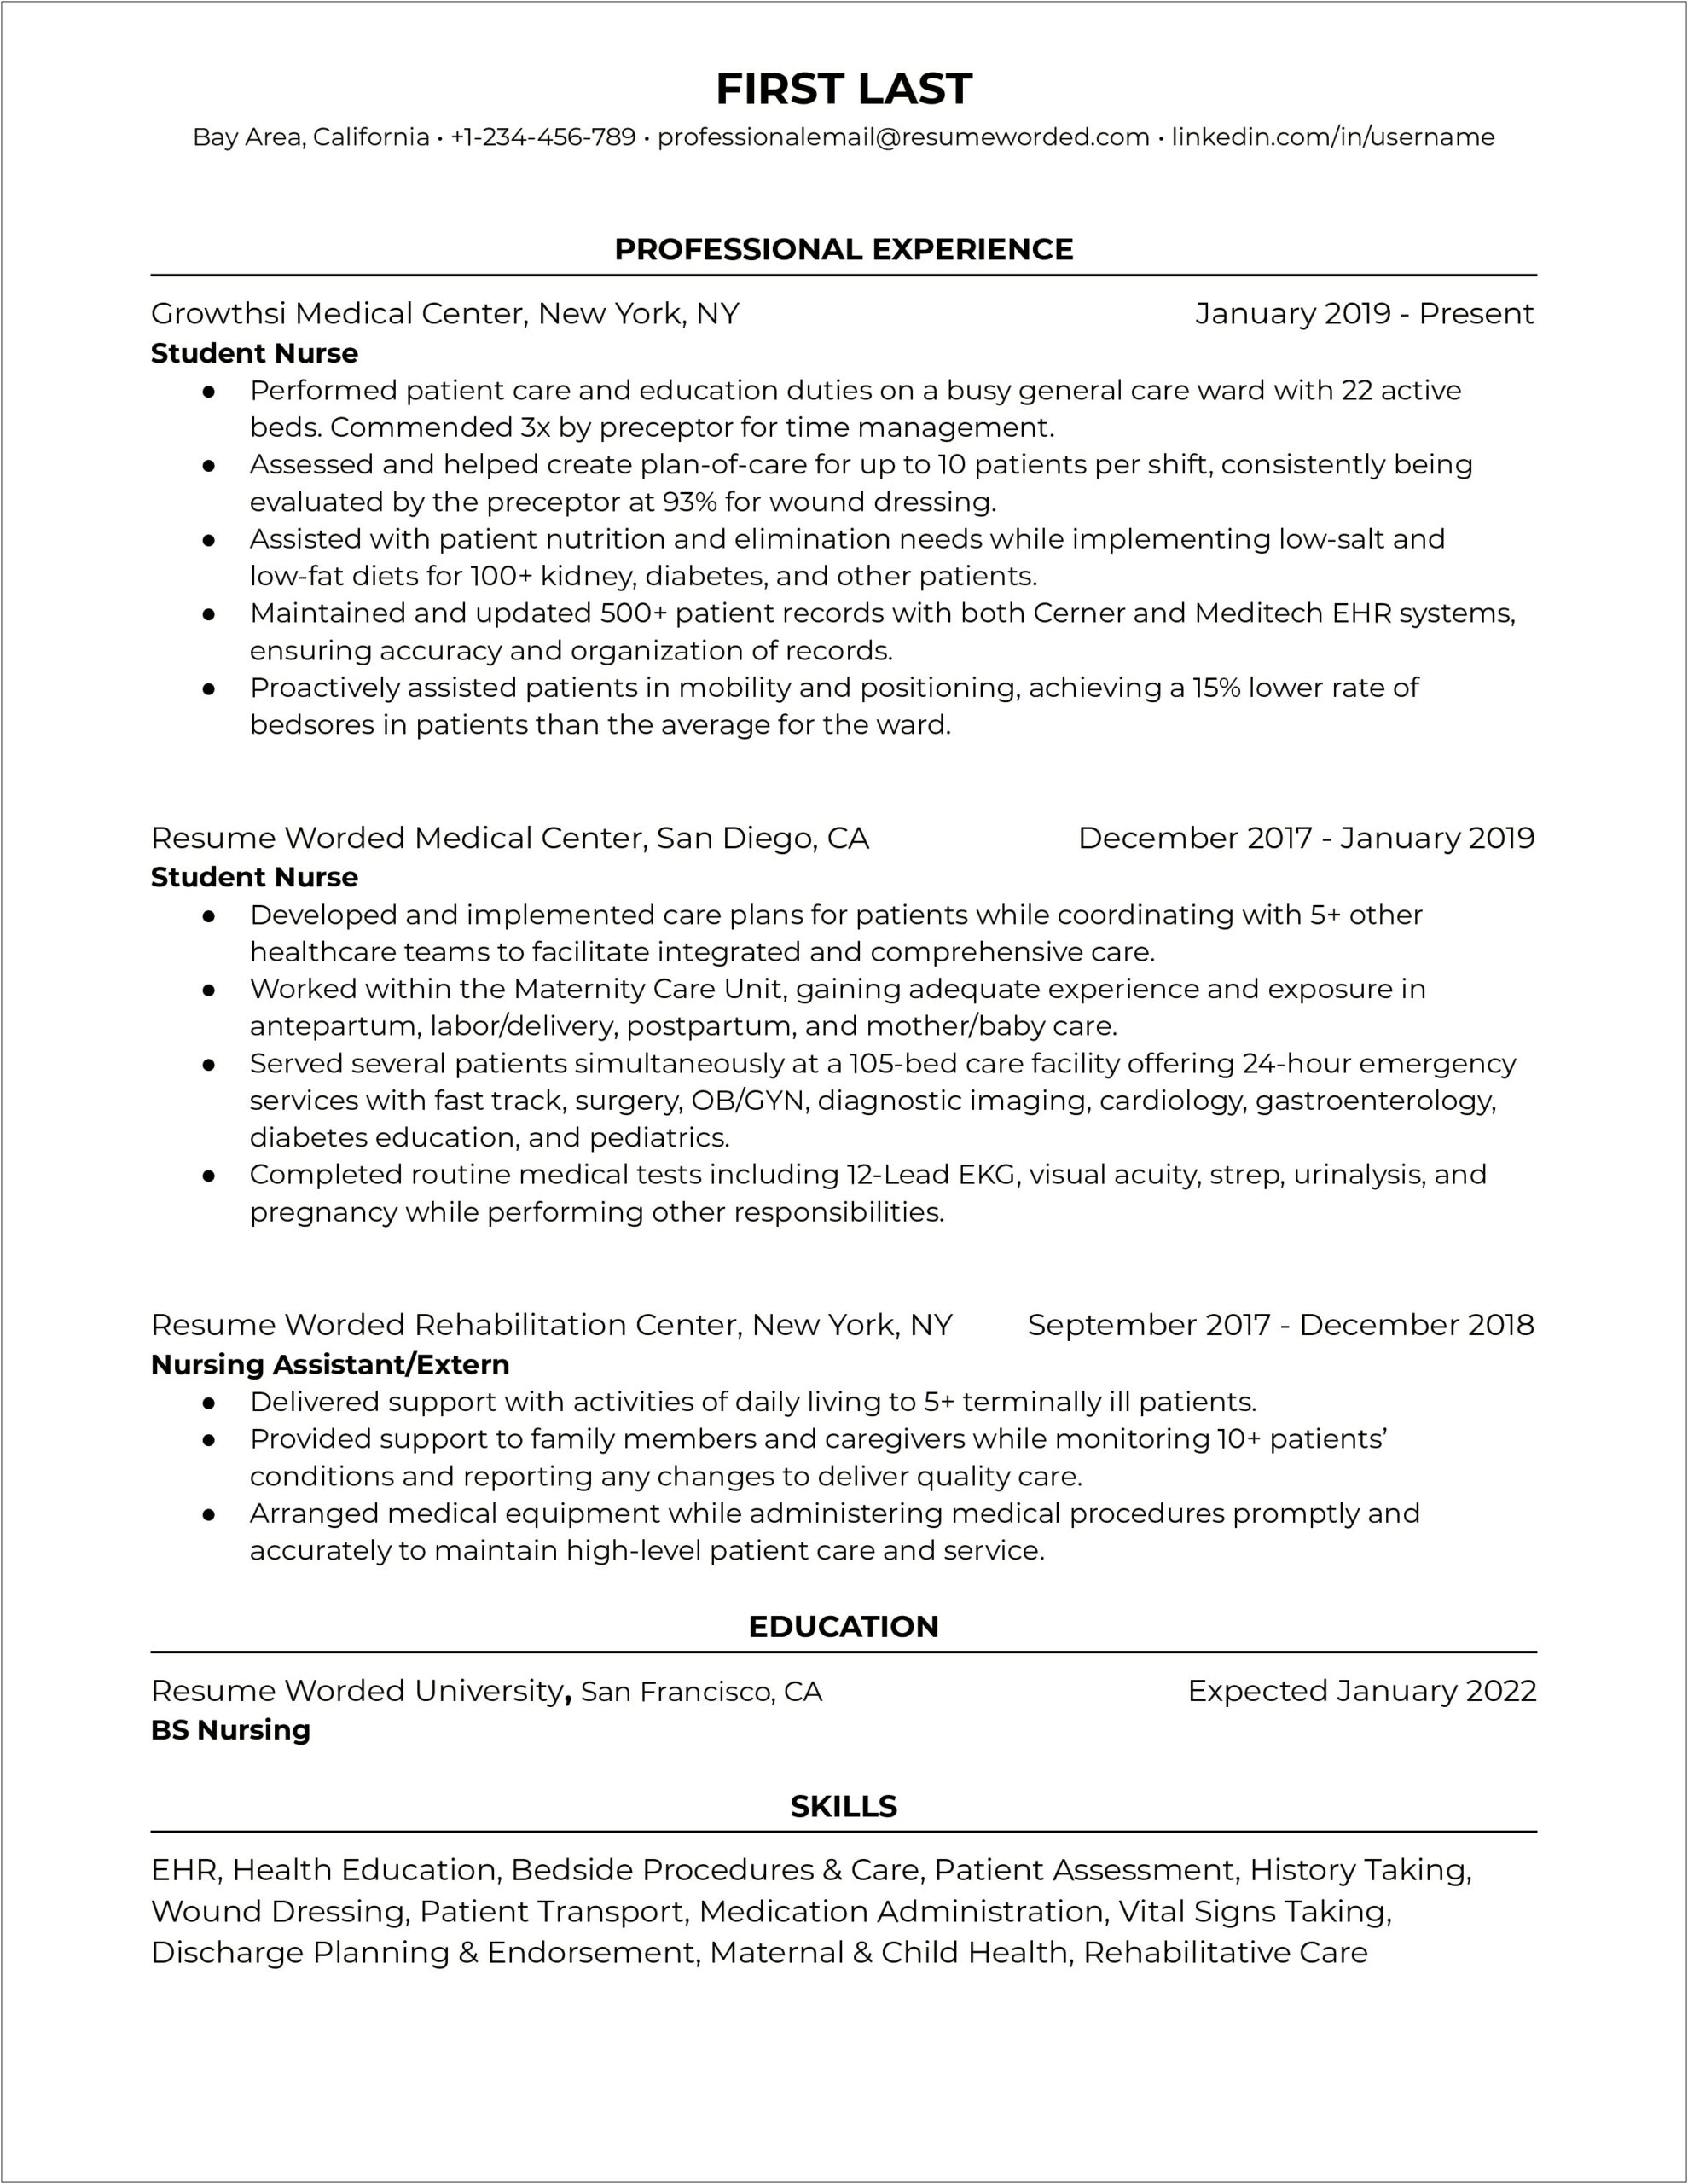 Sample Resume For A Graduate Nurse